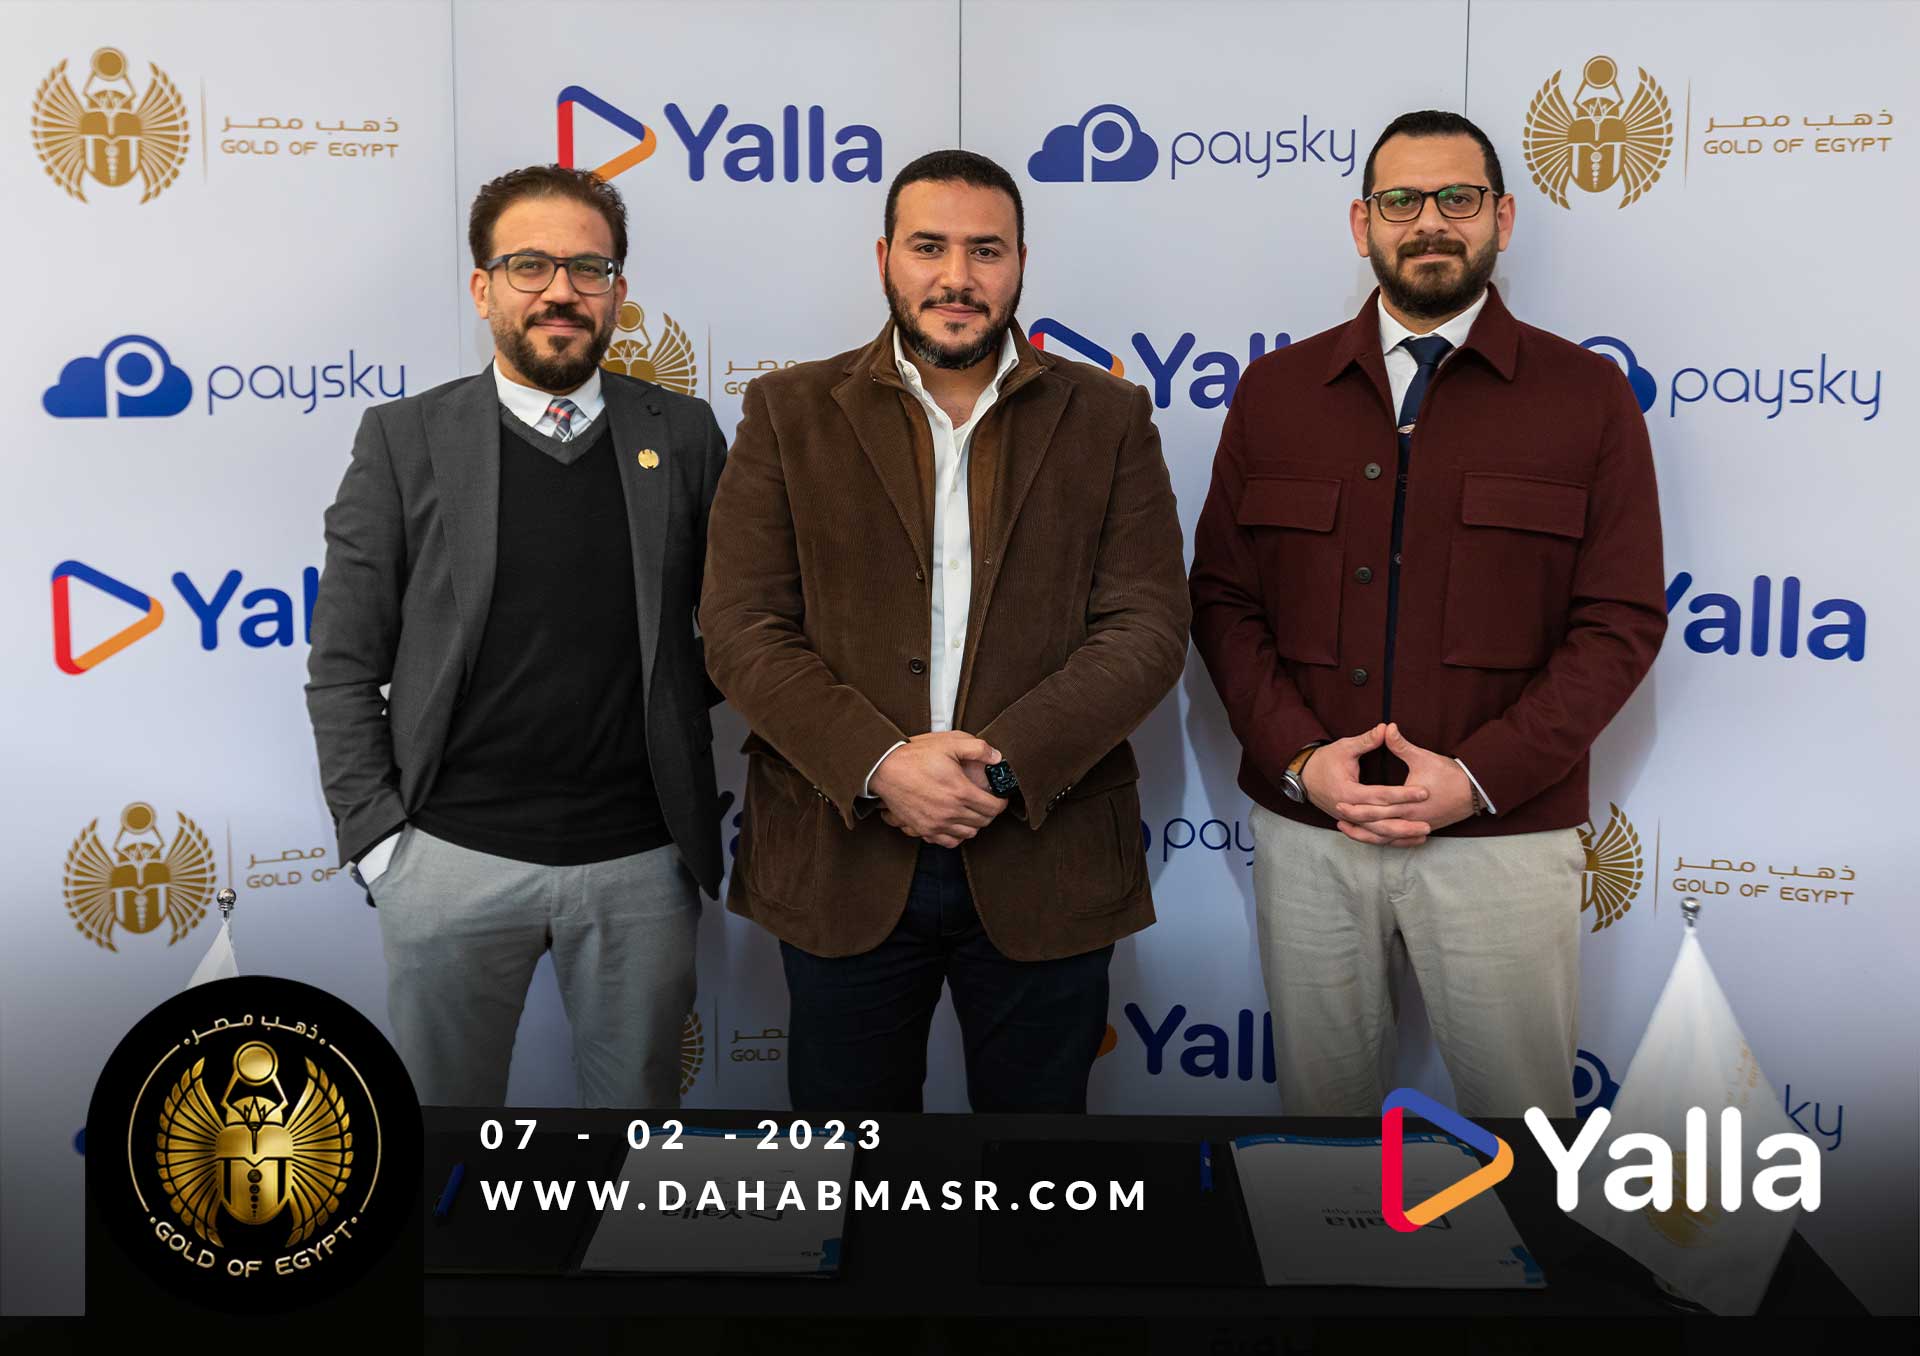 Yalla Press Release 